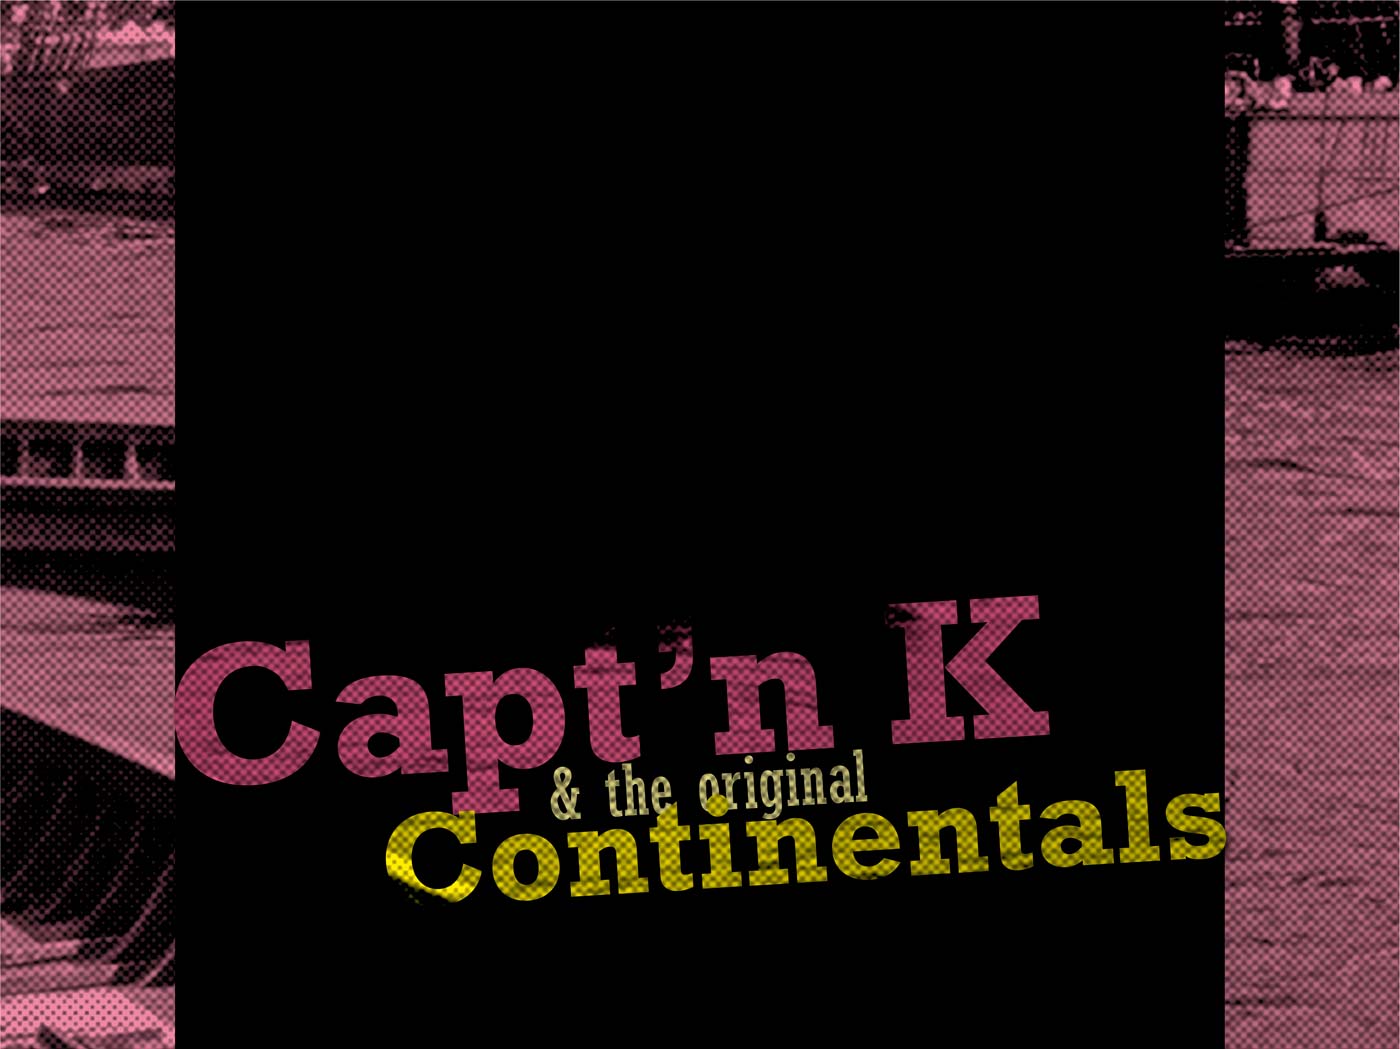 Capt'n and the original continentals